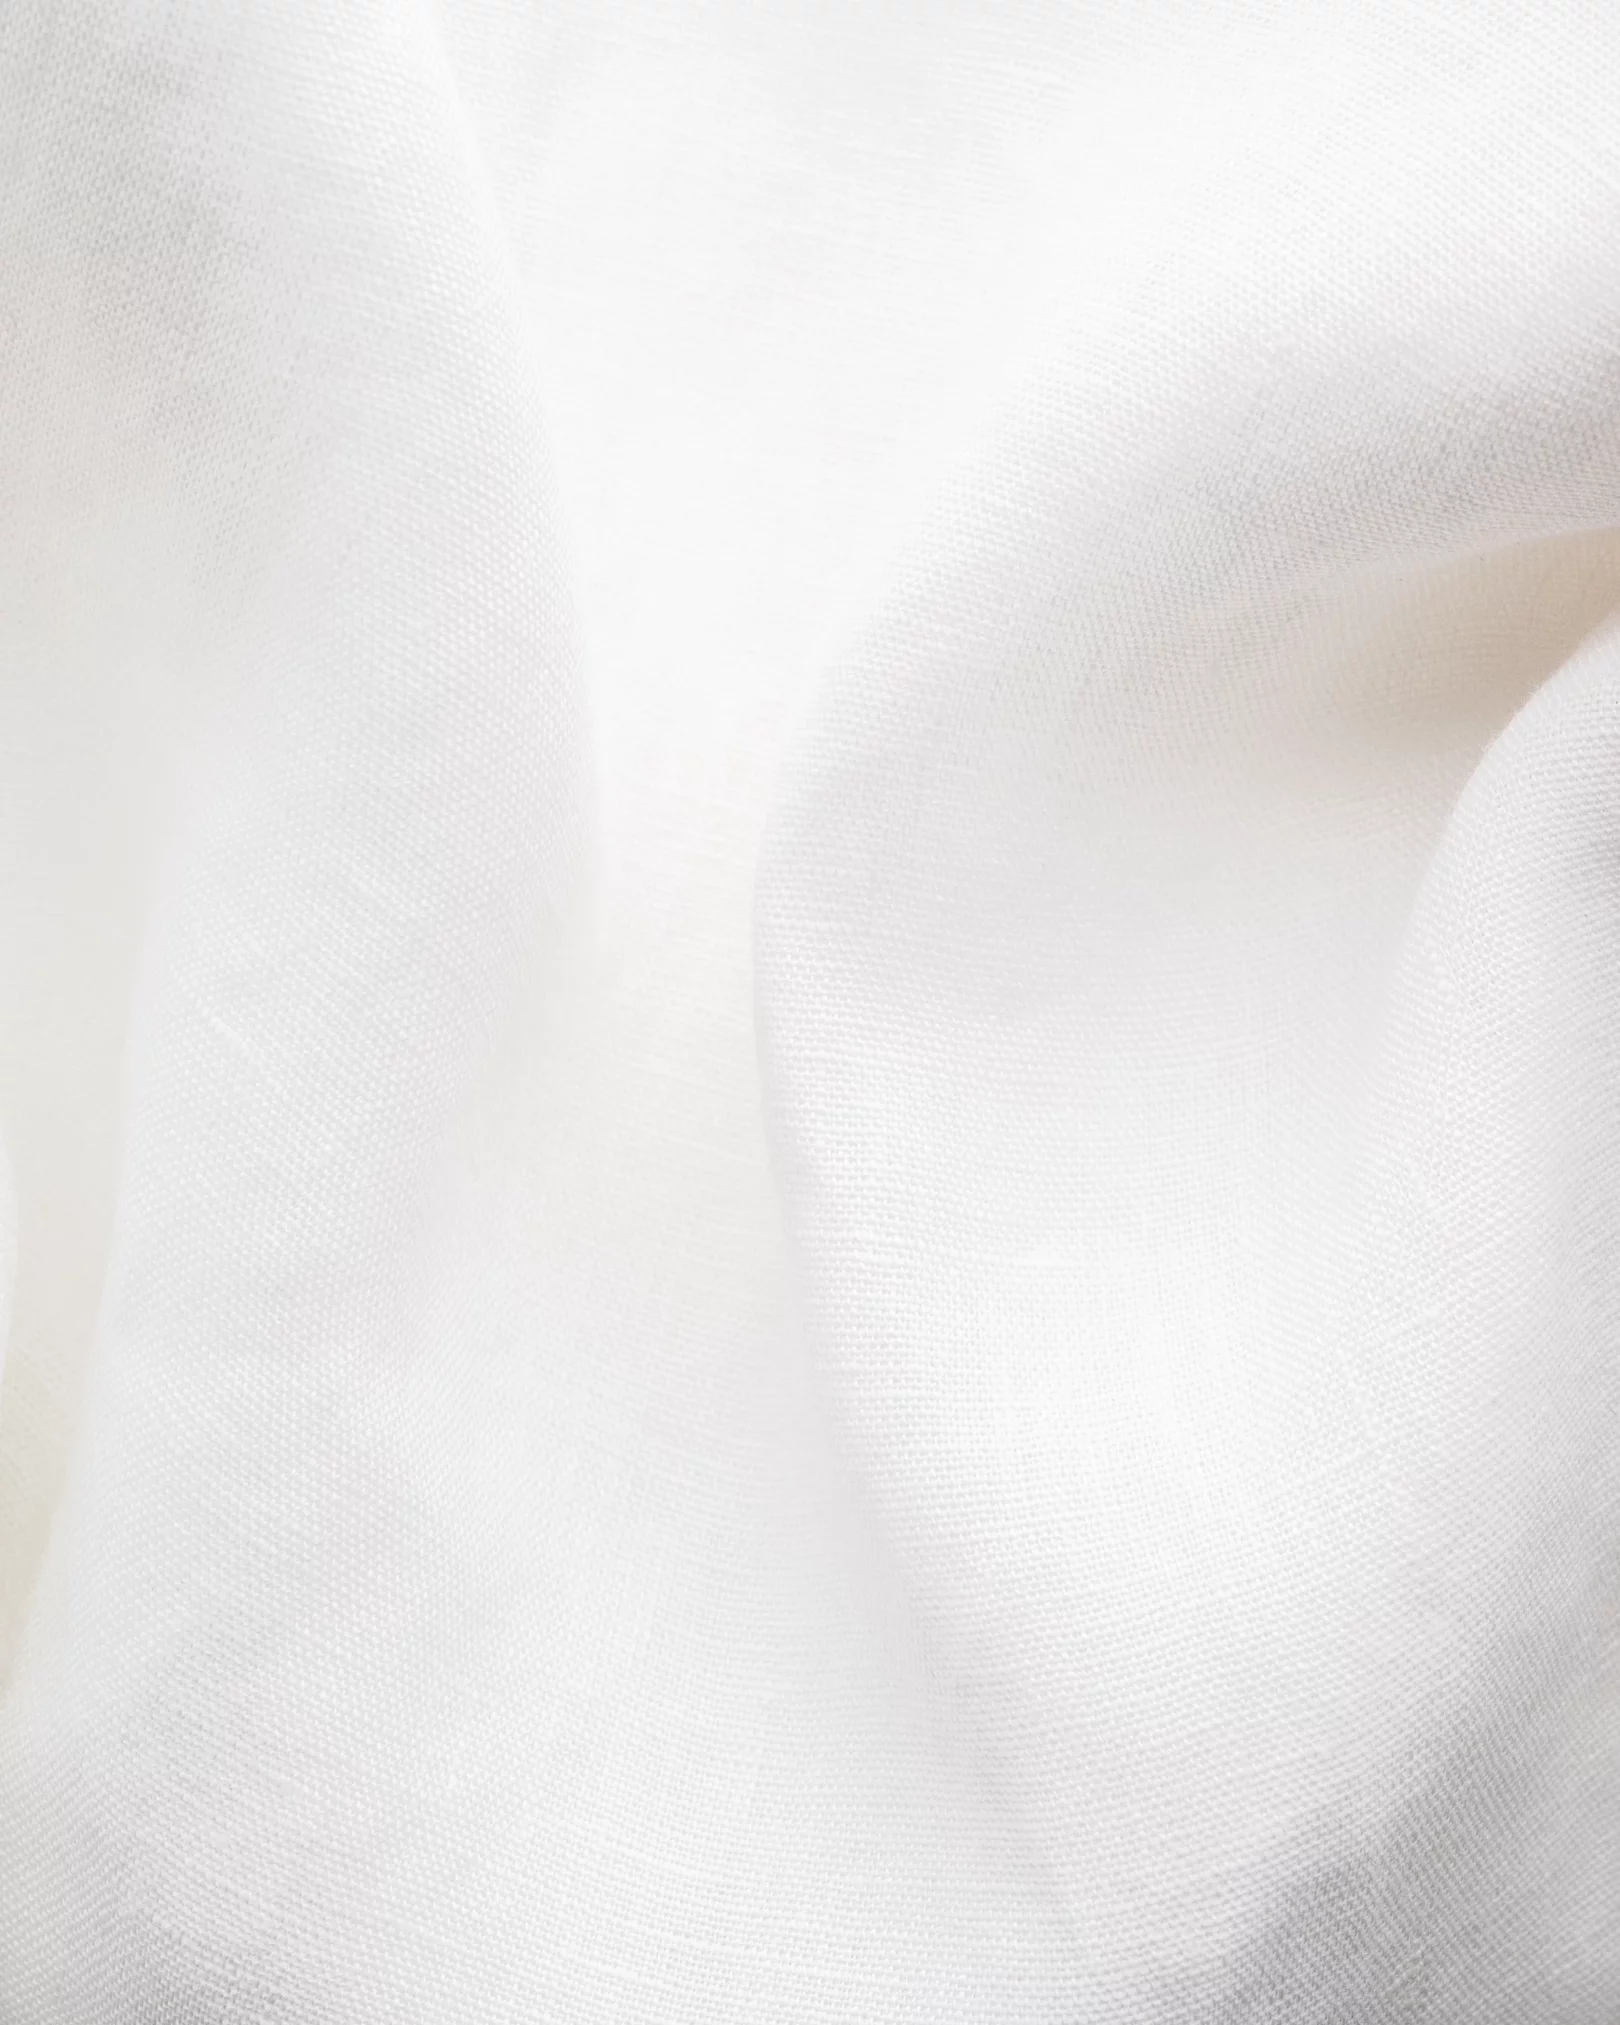 Eton - White Linen Shirt - Short Sleeve